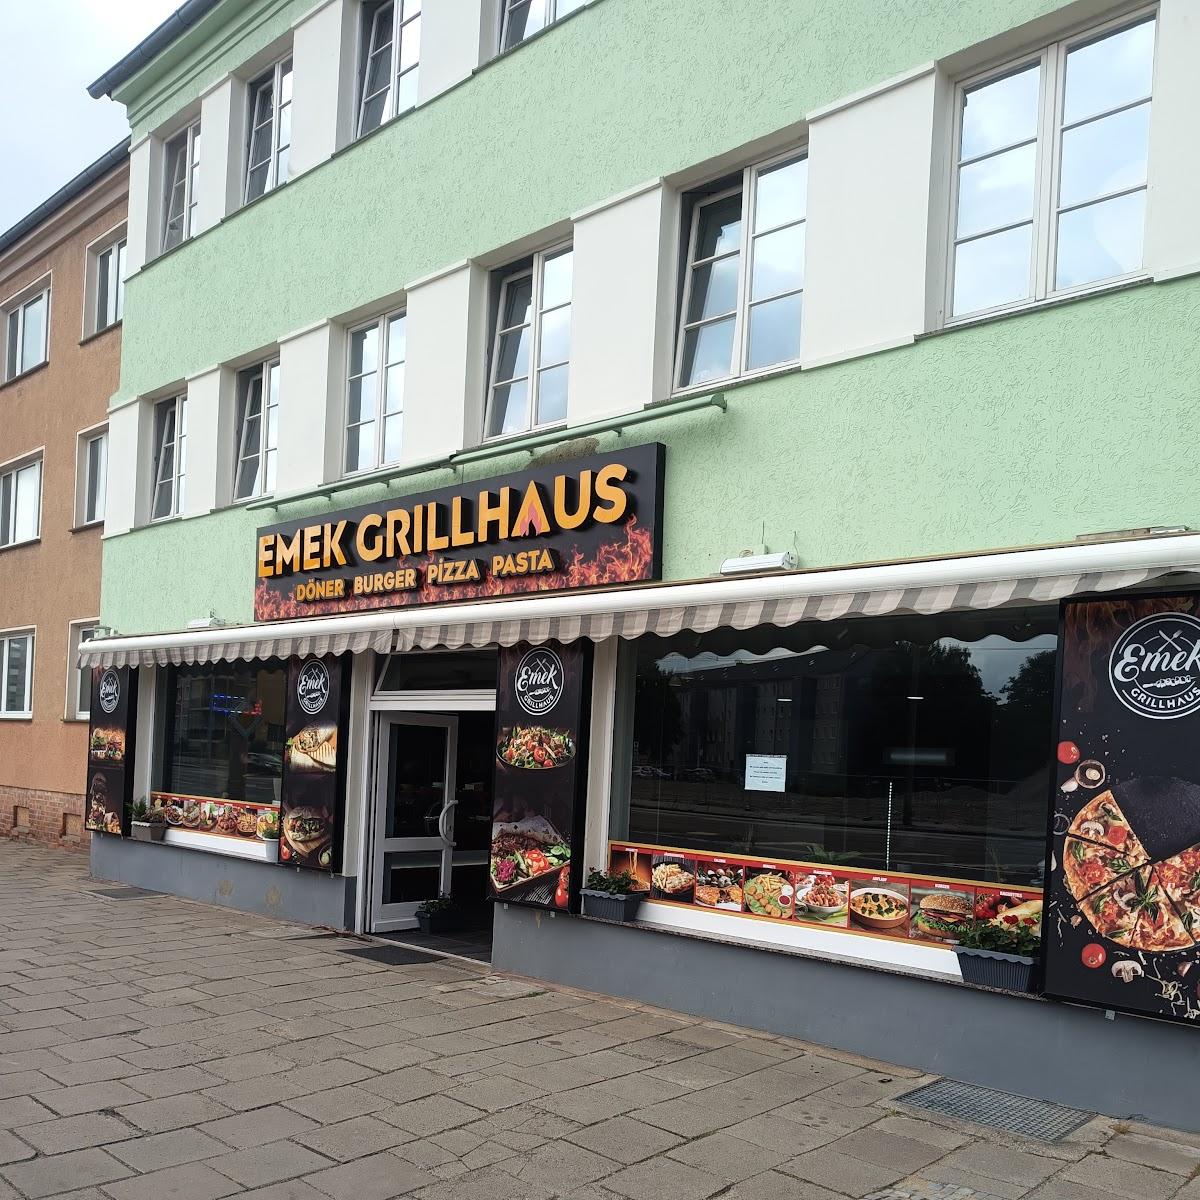 Restaurant "Emek Grillhaus" in Halberstadt